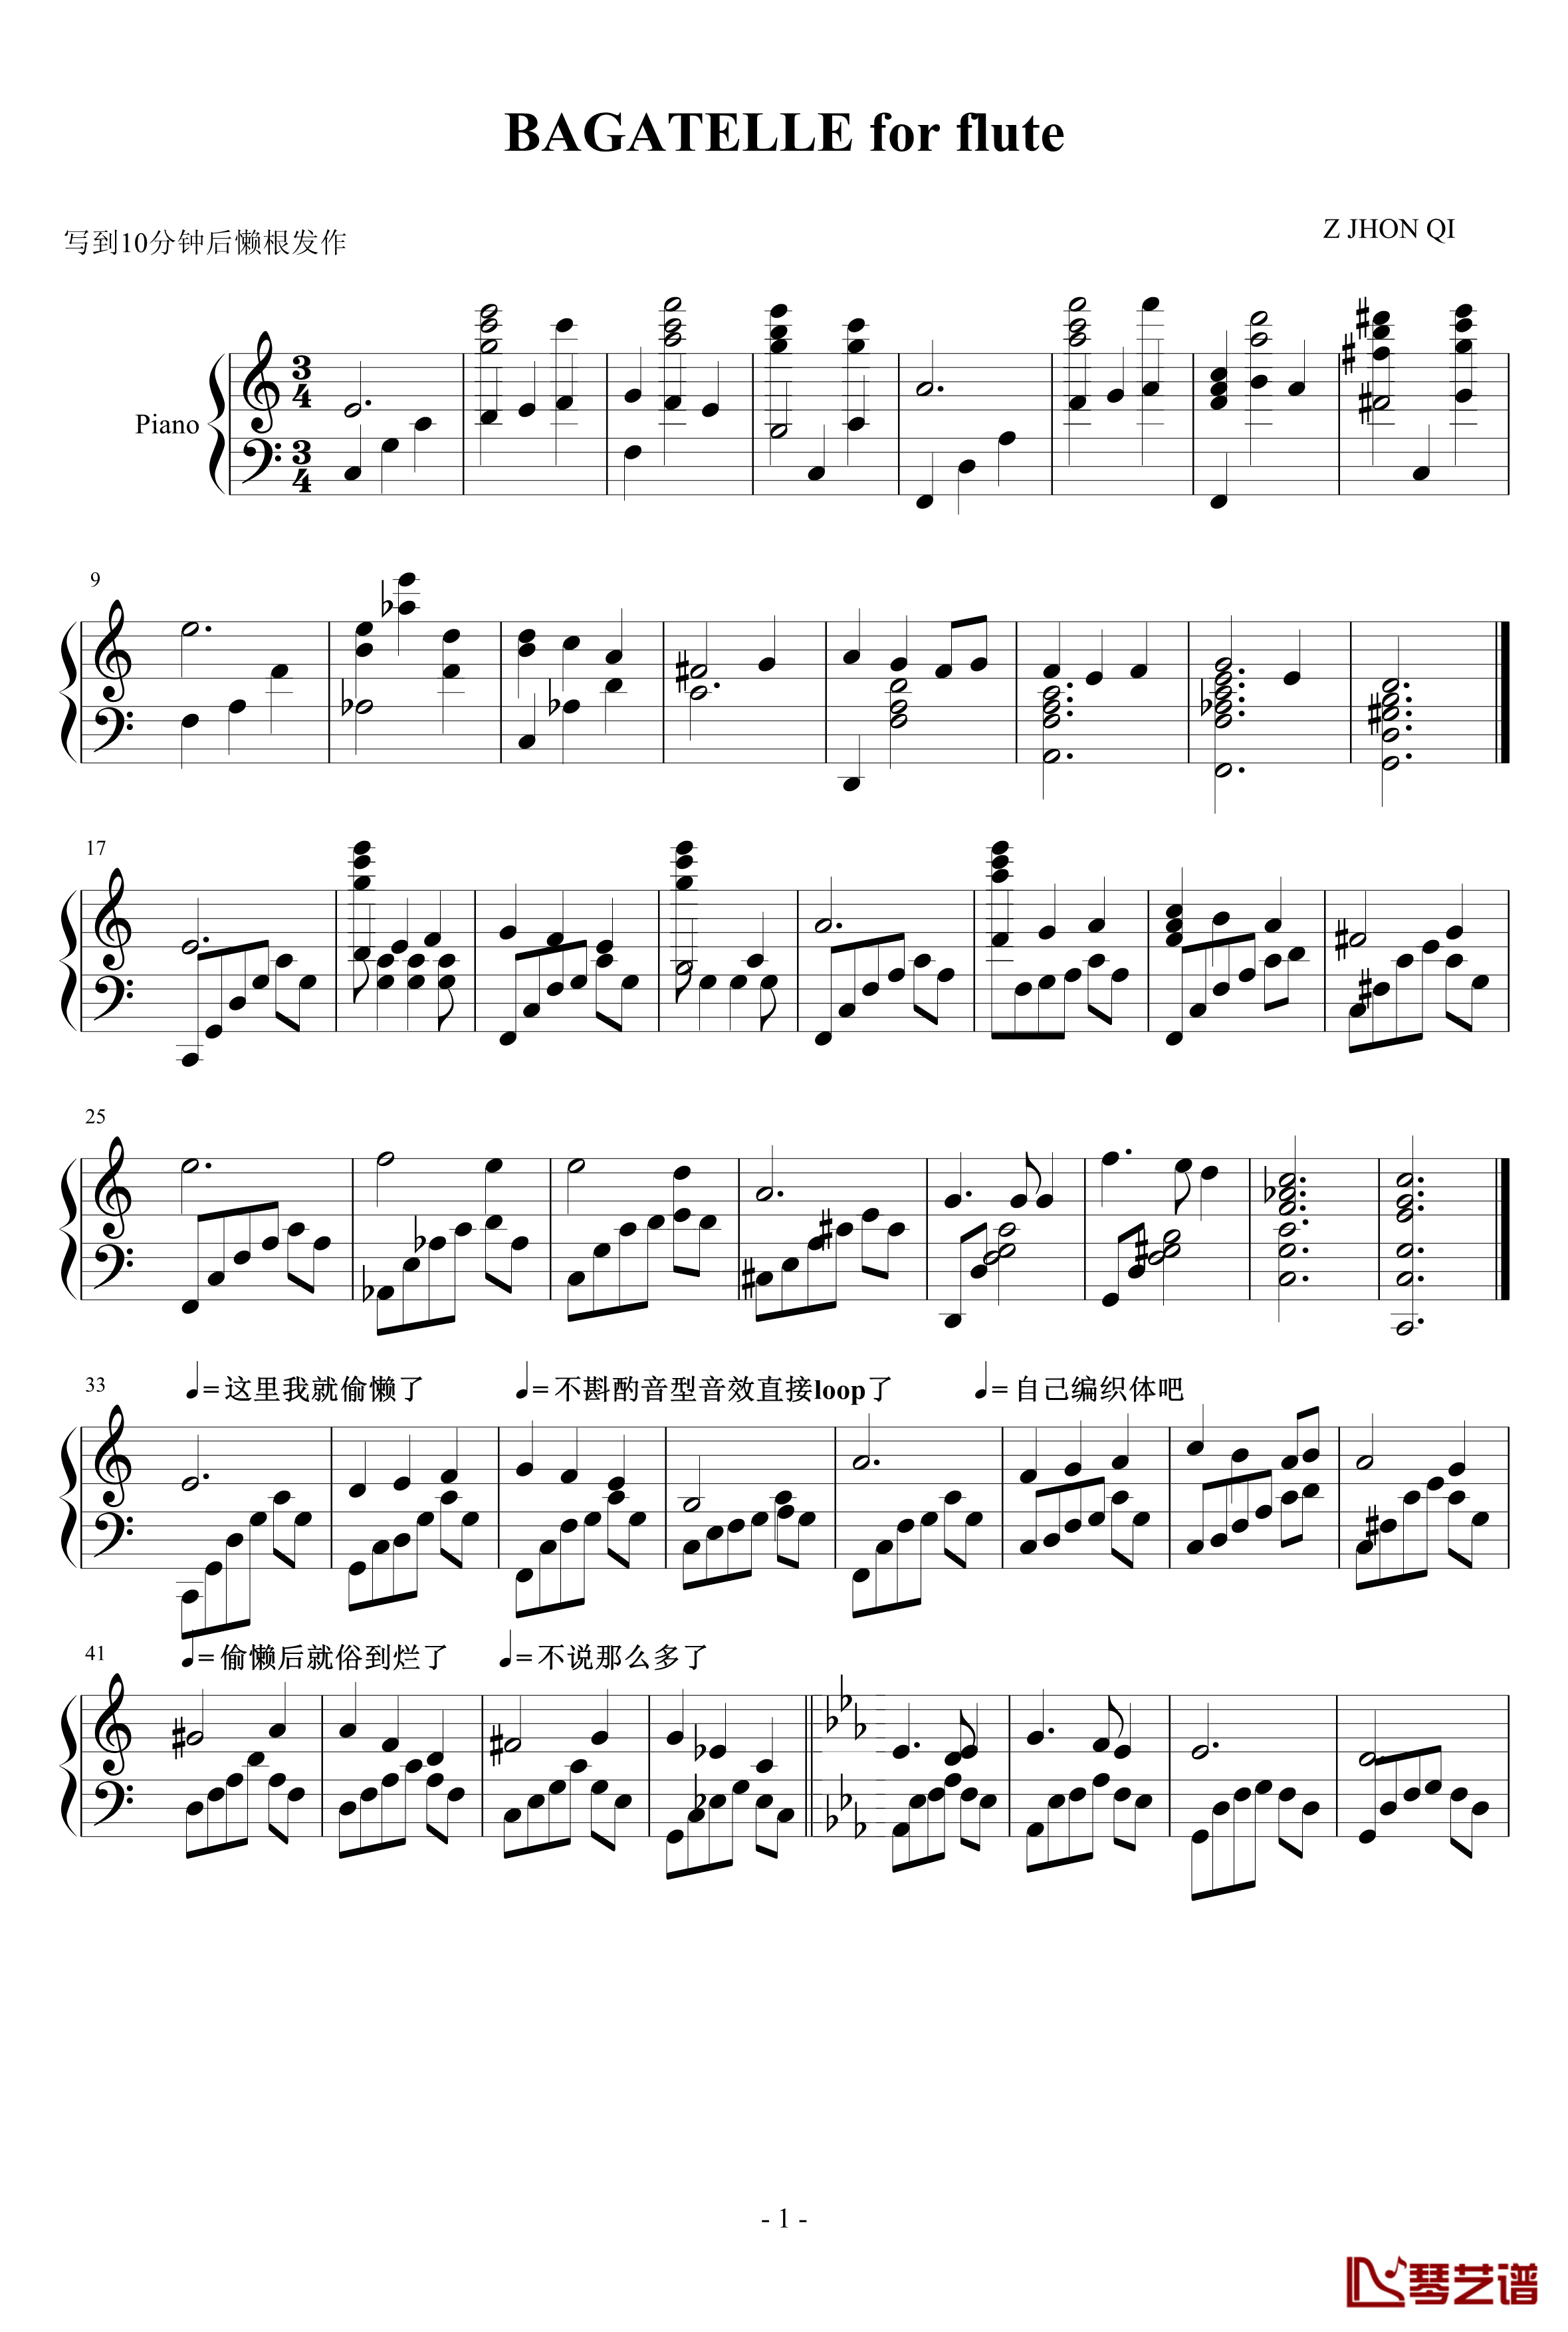 Bagatelle for Flute钢琴谱-Z7-漆政1